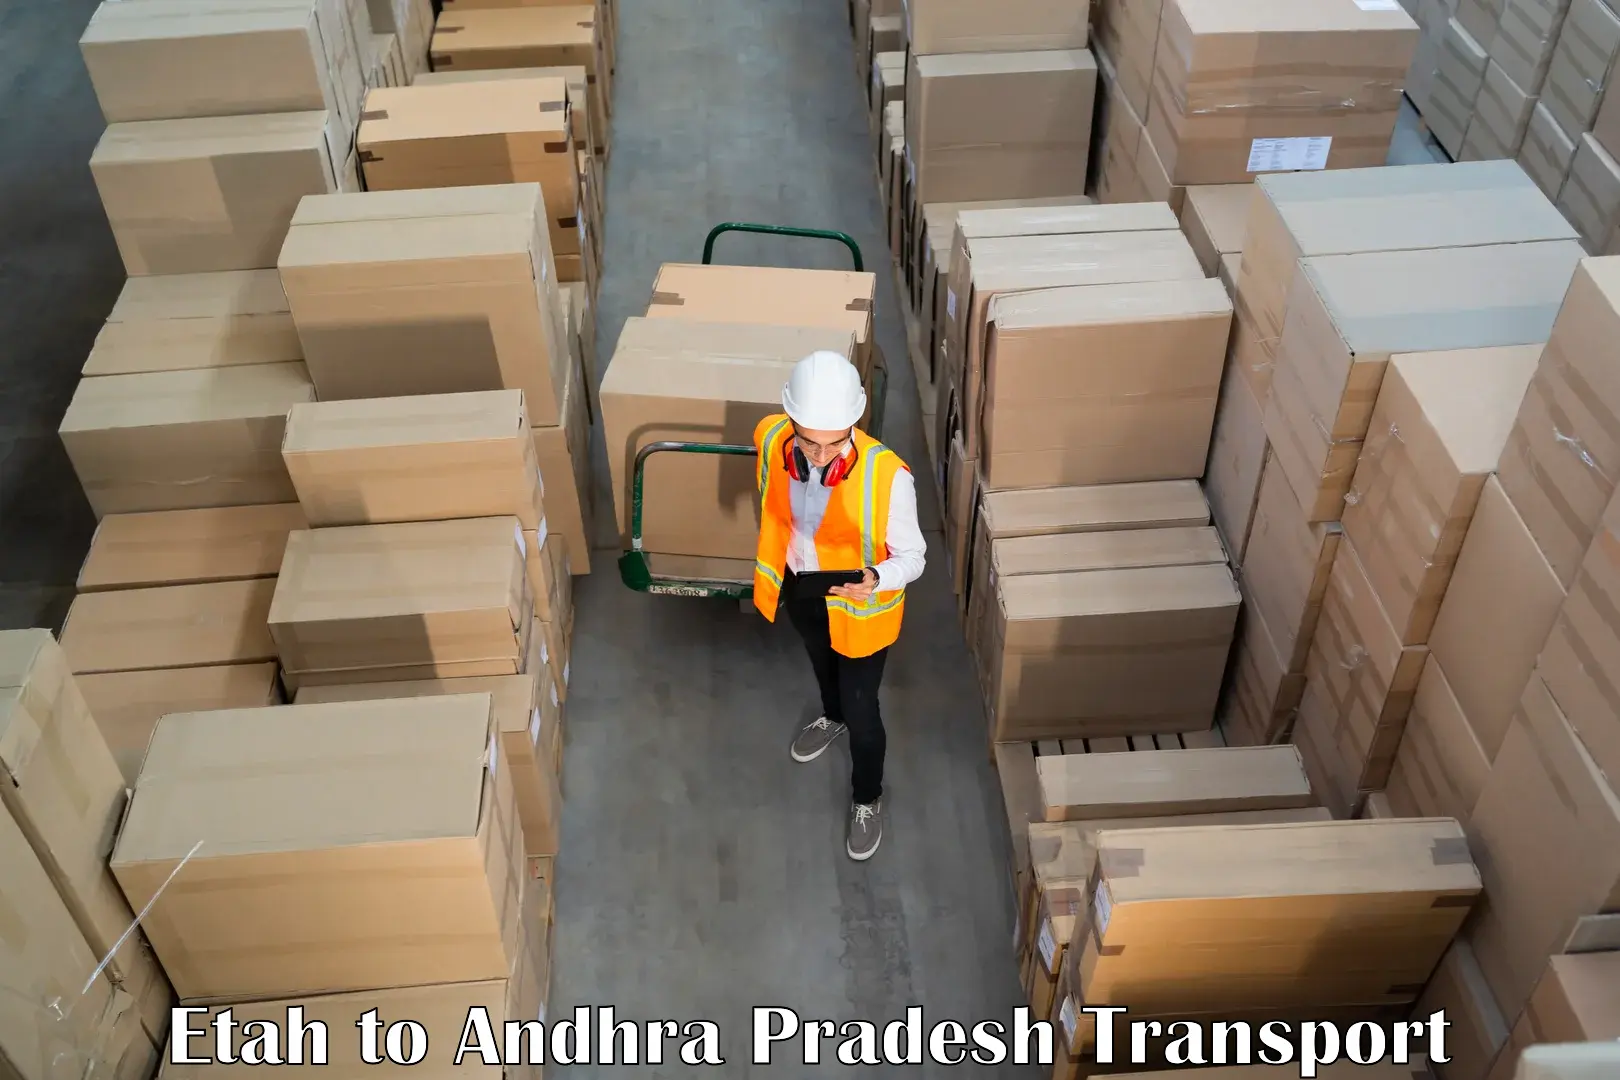 Truck transport companies in India Etah to Nuzvid